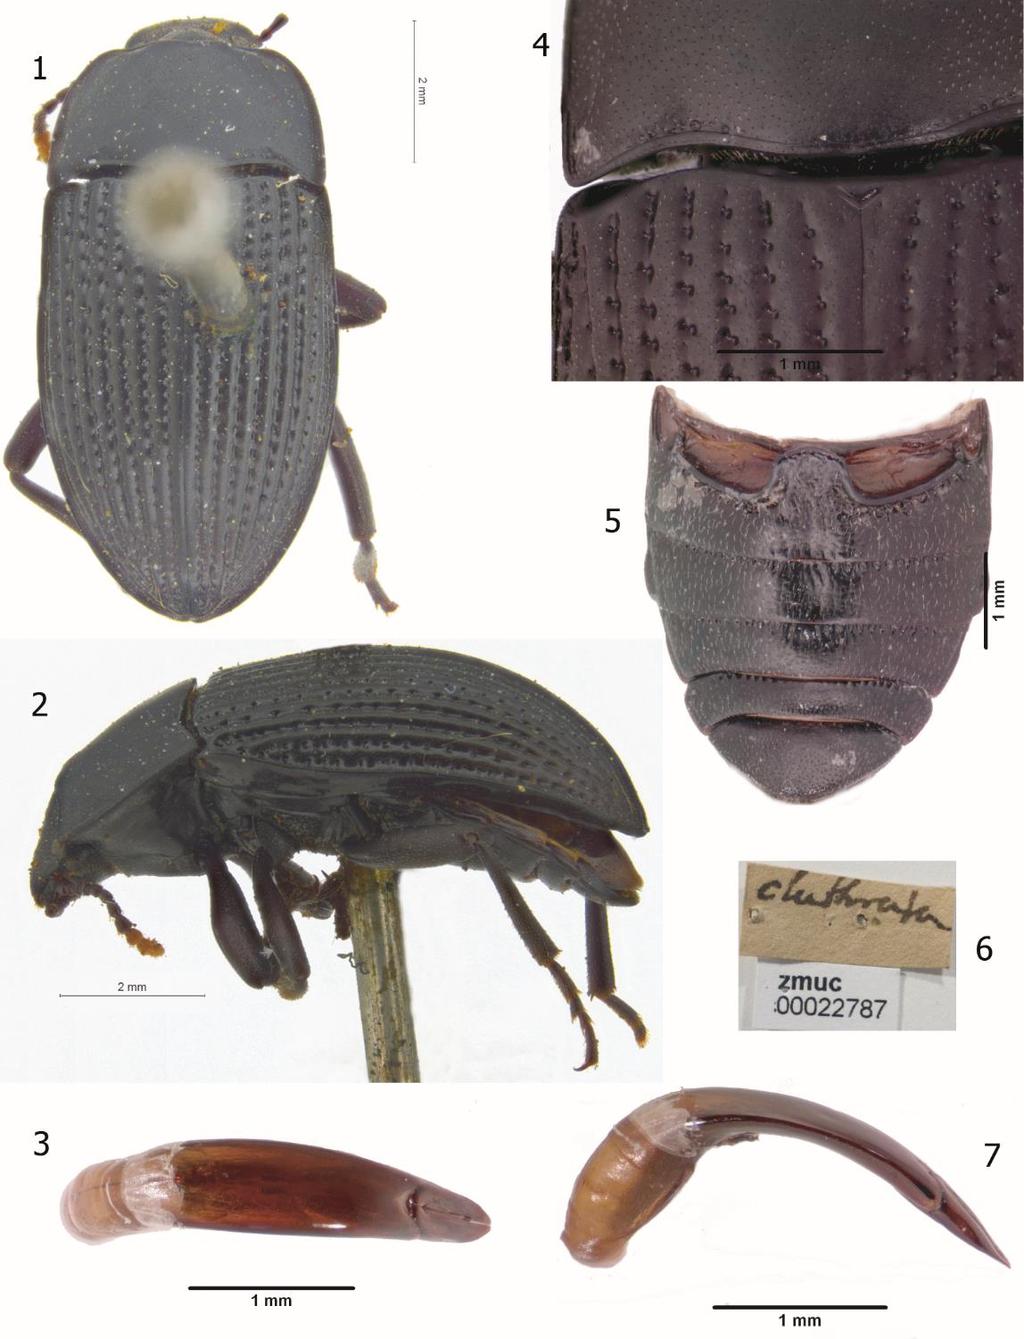 120 Figures 1-7. Diastoinus clathratus. 1. D. clathratus Holotype, dorsal habitus (ZMUC). 2. D. clathratus Holotype, lateral view (ZMUC). 3. D. clathratus aedeagus, dorsal view.